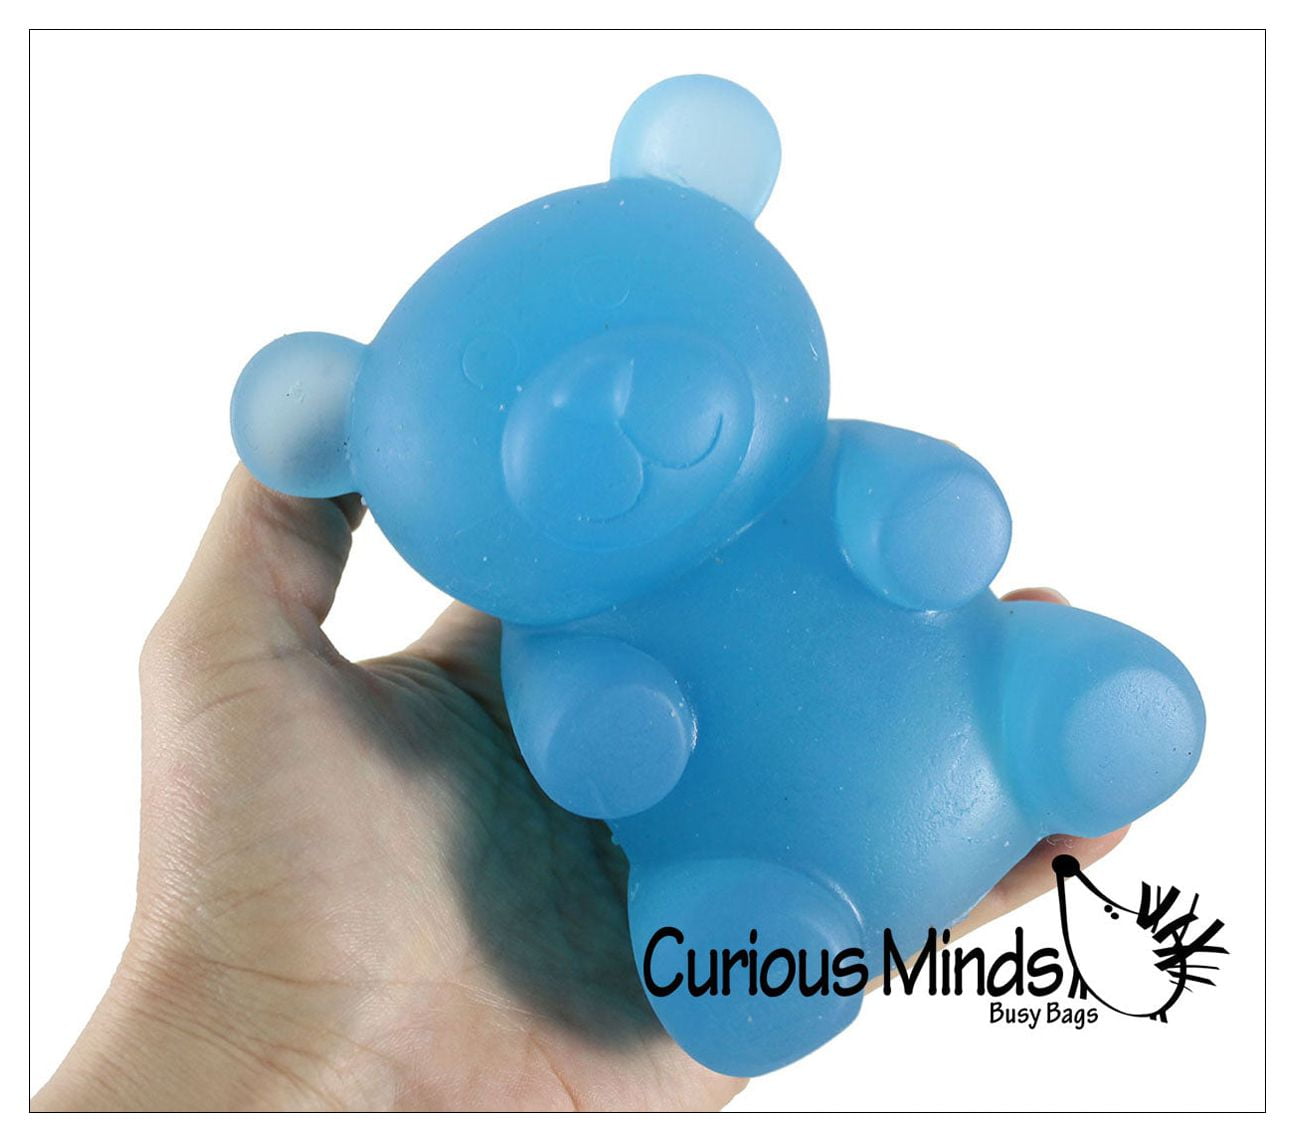 IBloom Gummy Bear Squishy Toy - Blue